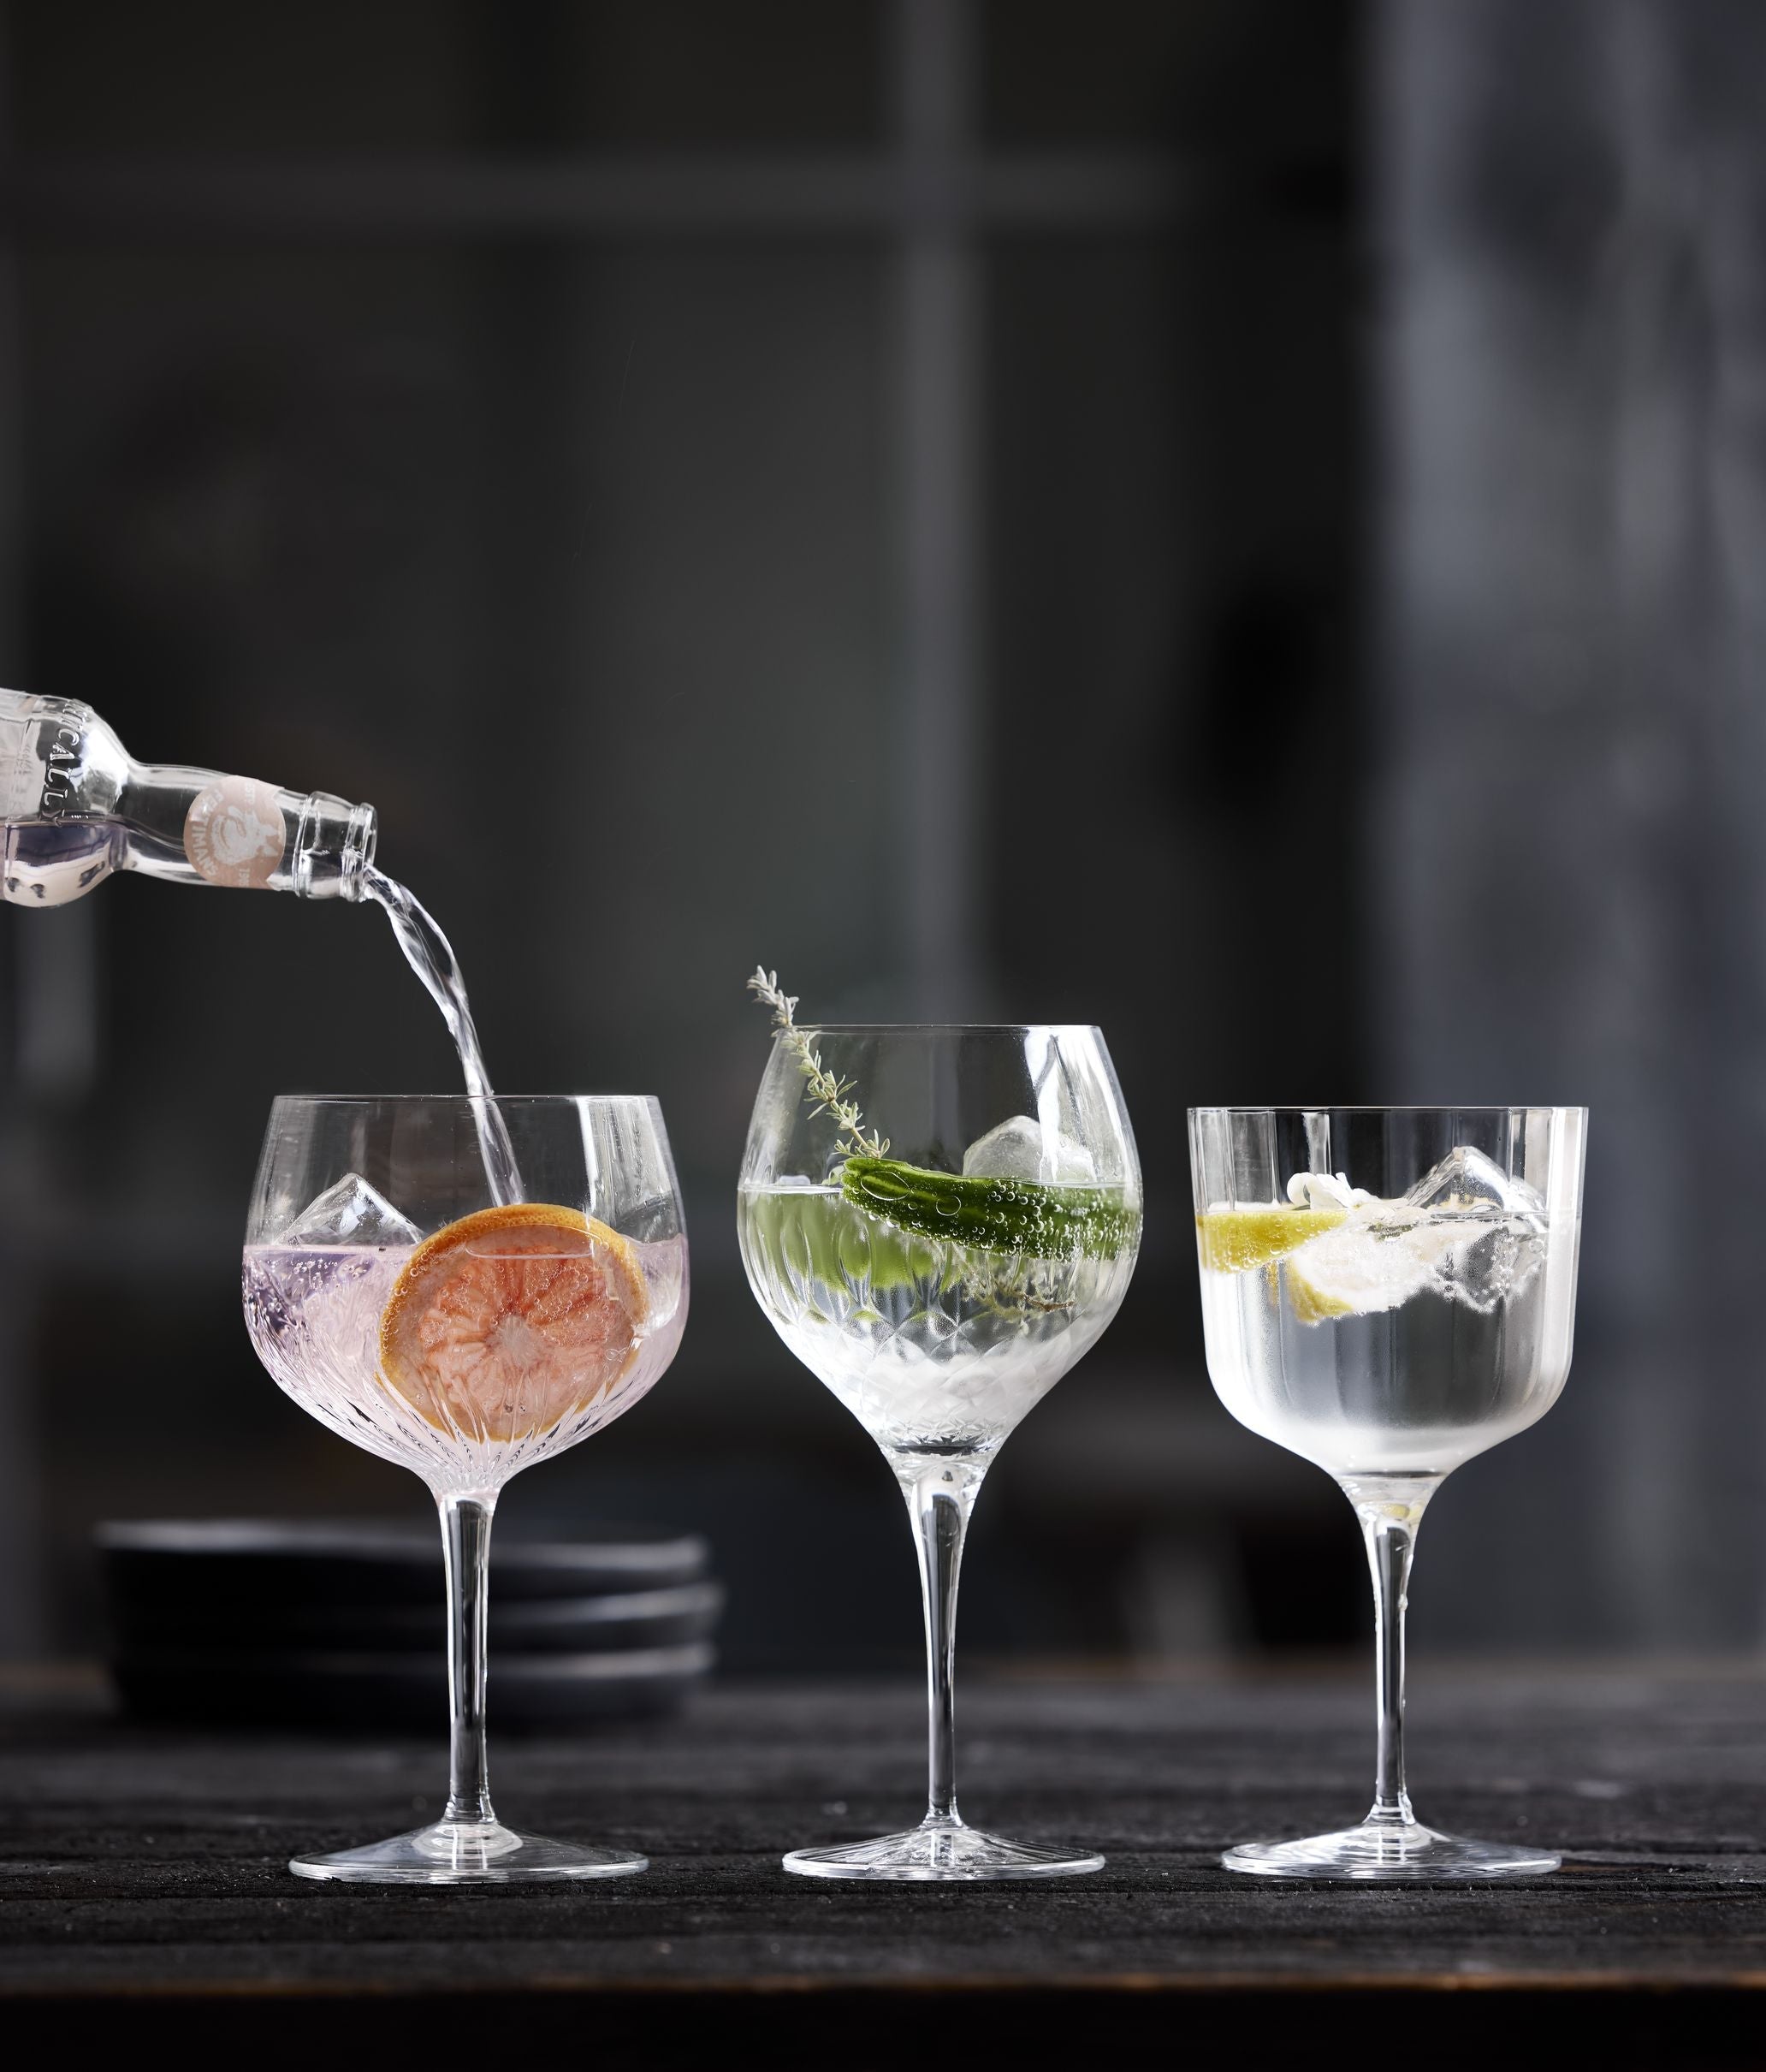 Luigi Bormioli Mixology Spanish Gin & Tonic Glass, 4 st.